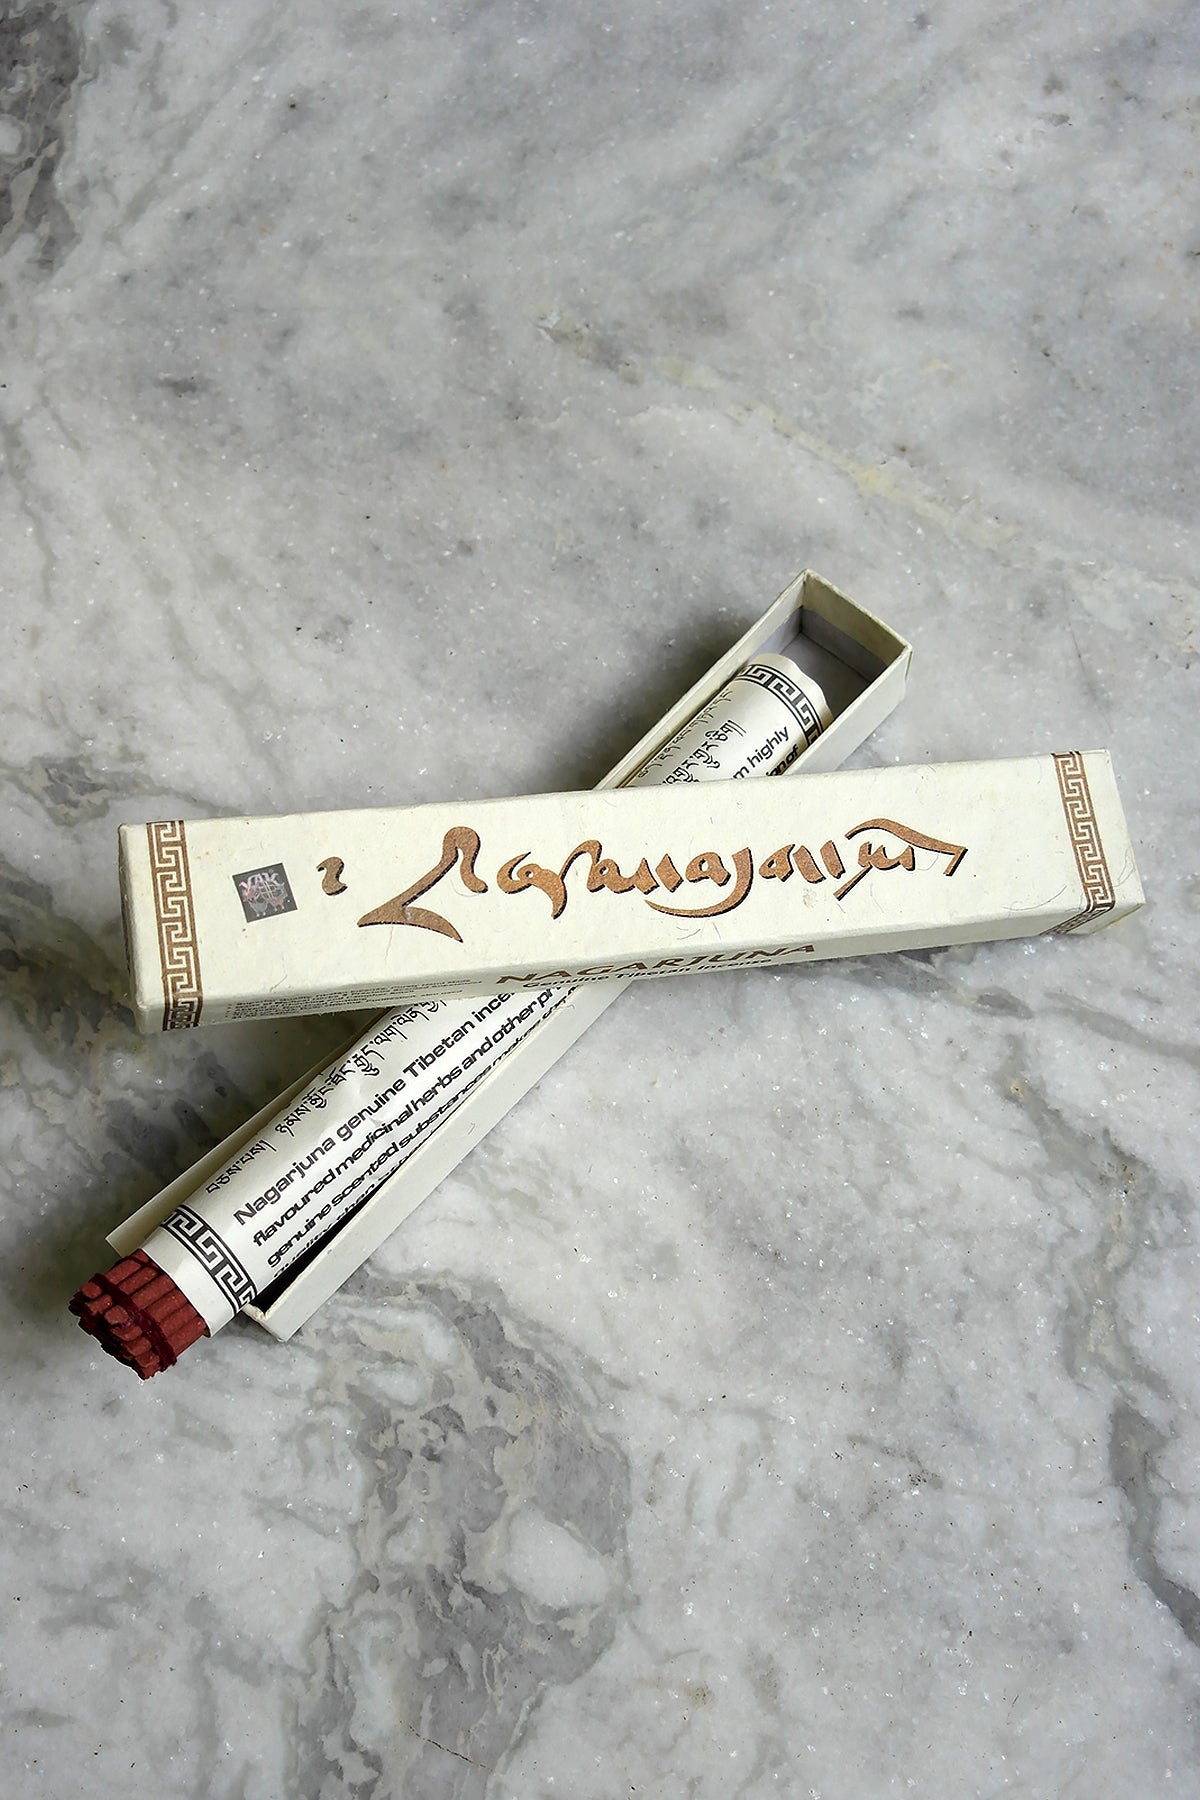 Tibetan Nagarjuna Incense Sticks